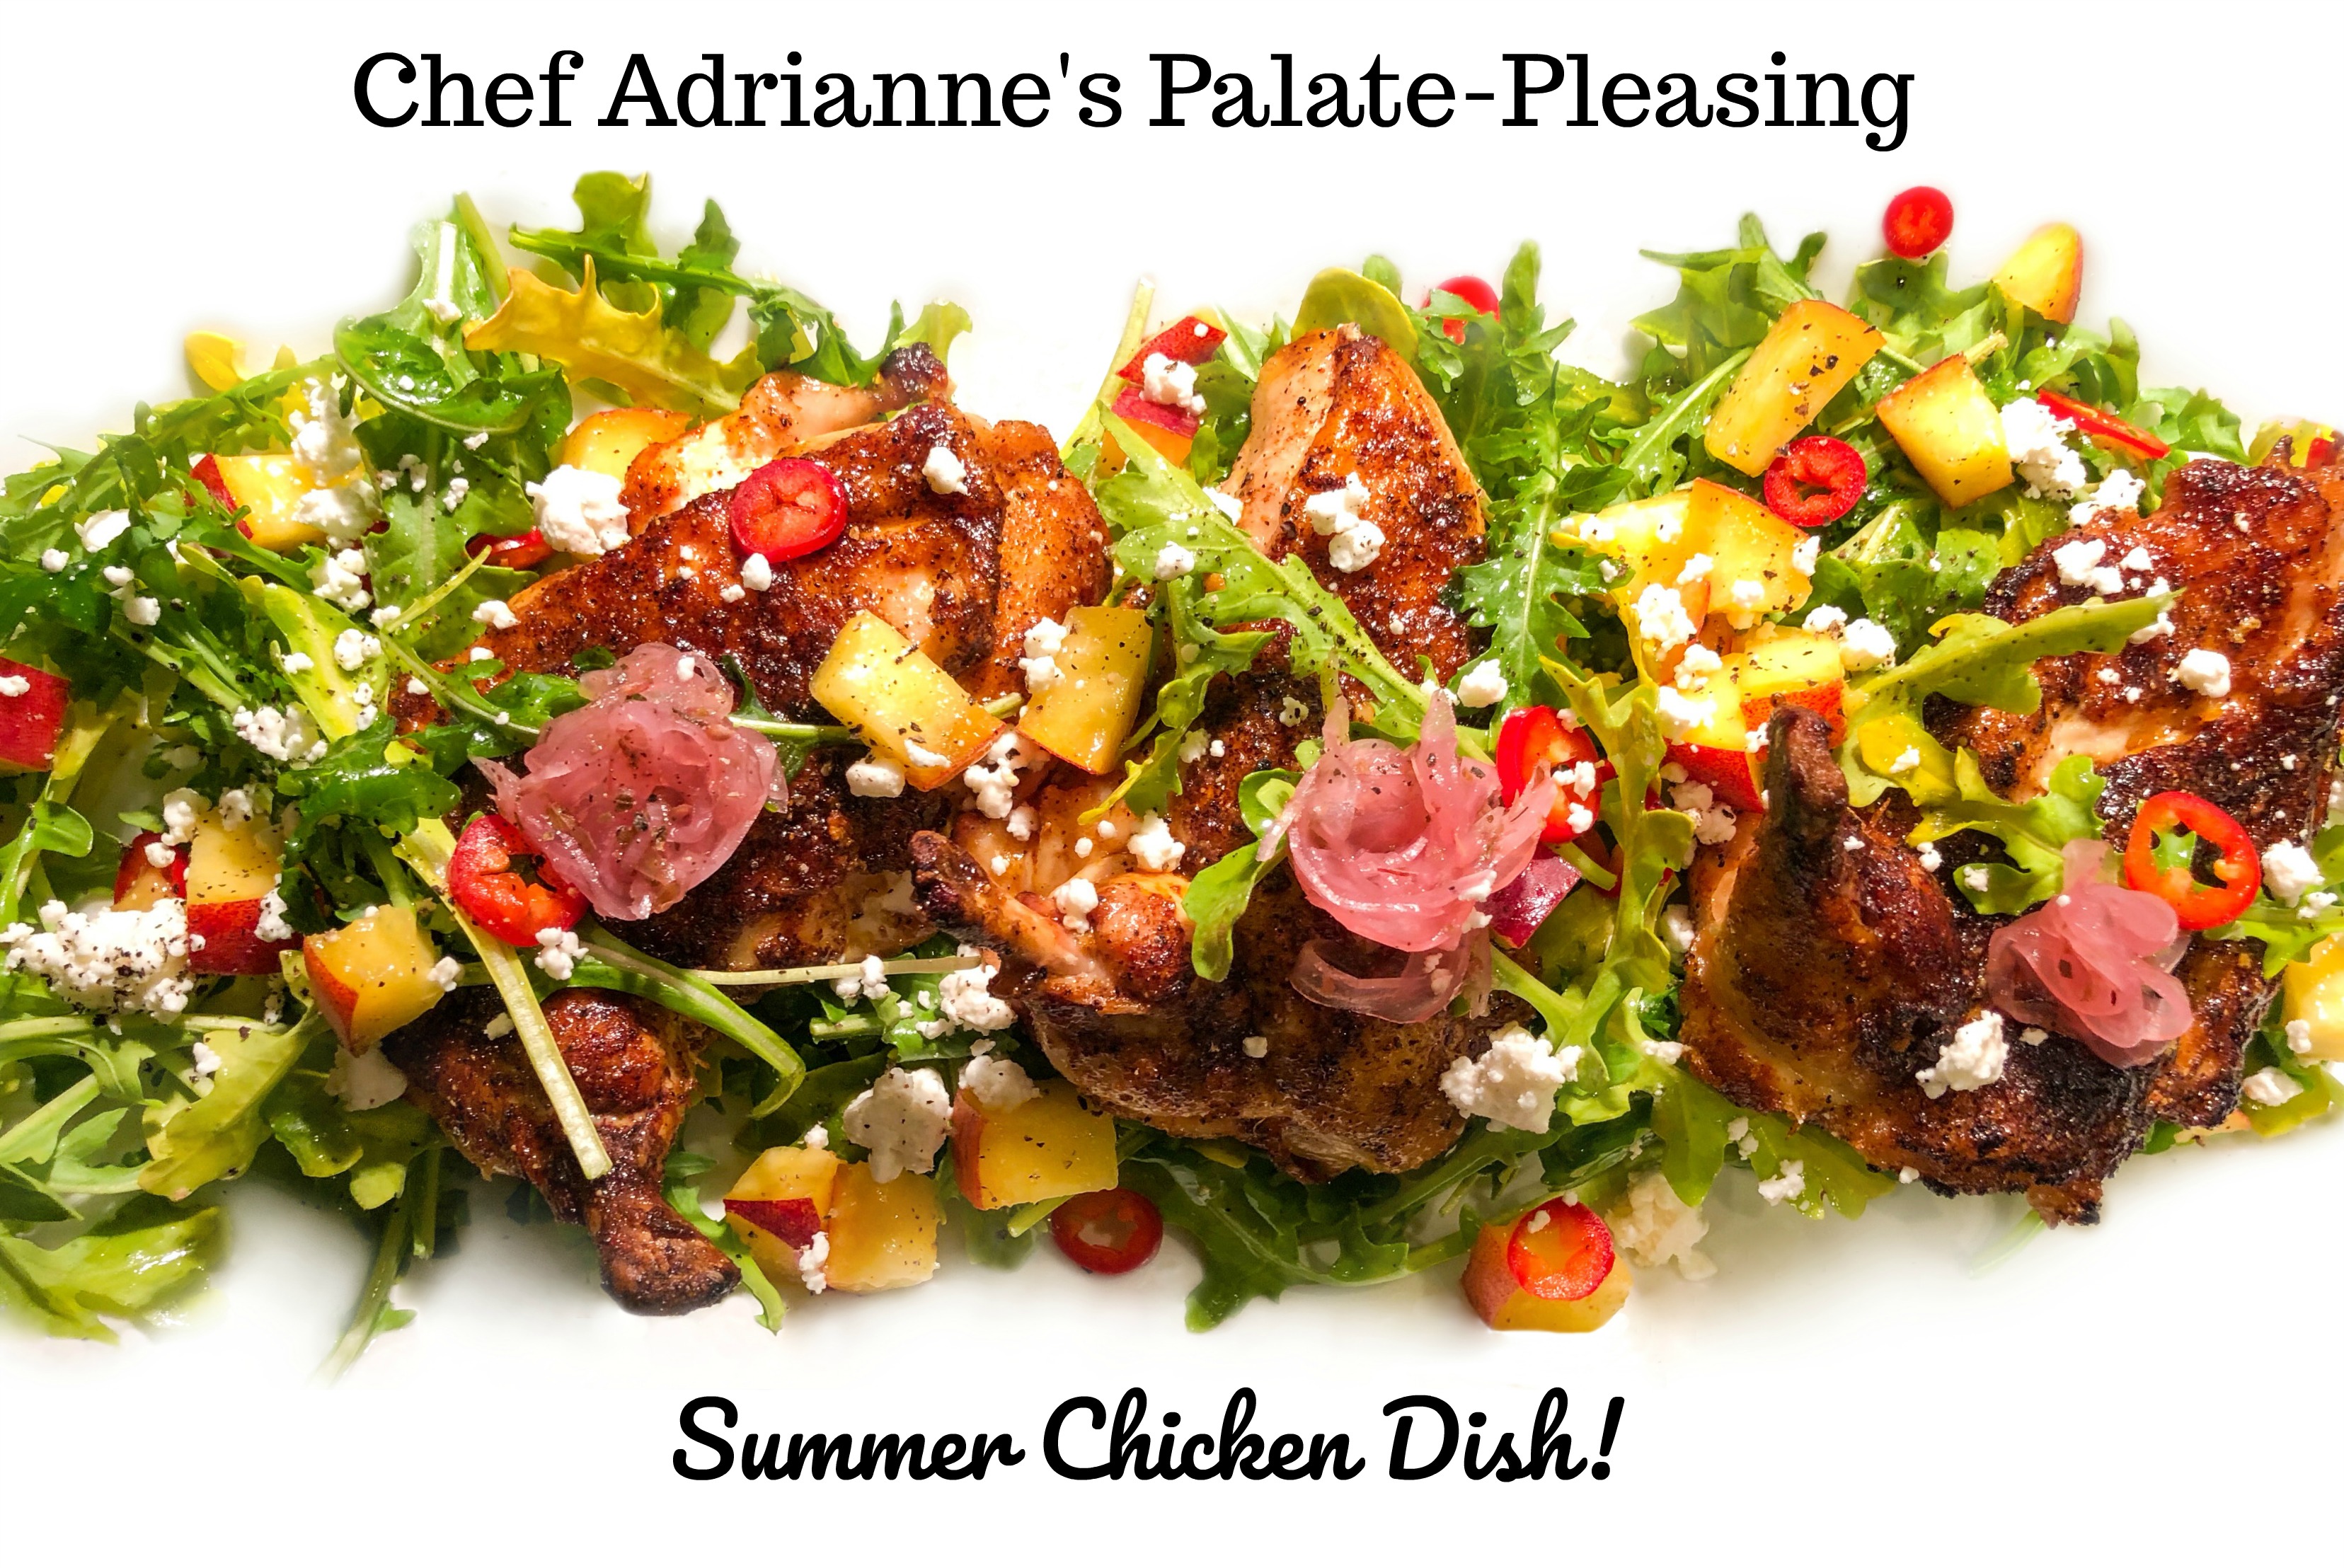 Chef Adrianne's Palate-Pleasing Summer Chicken Dish